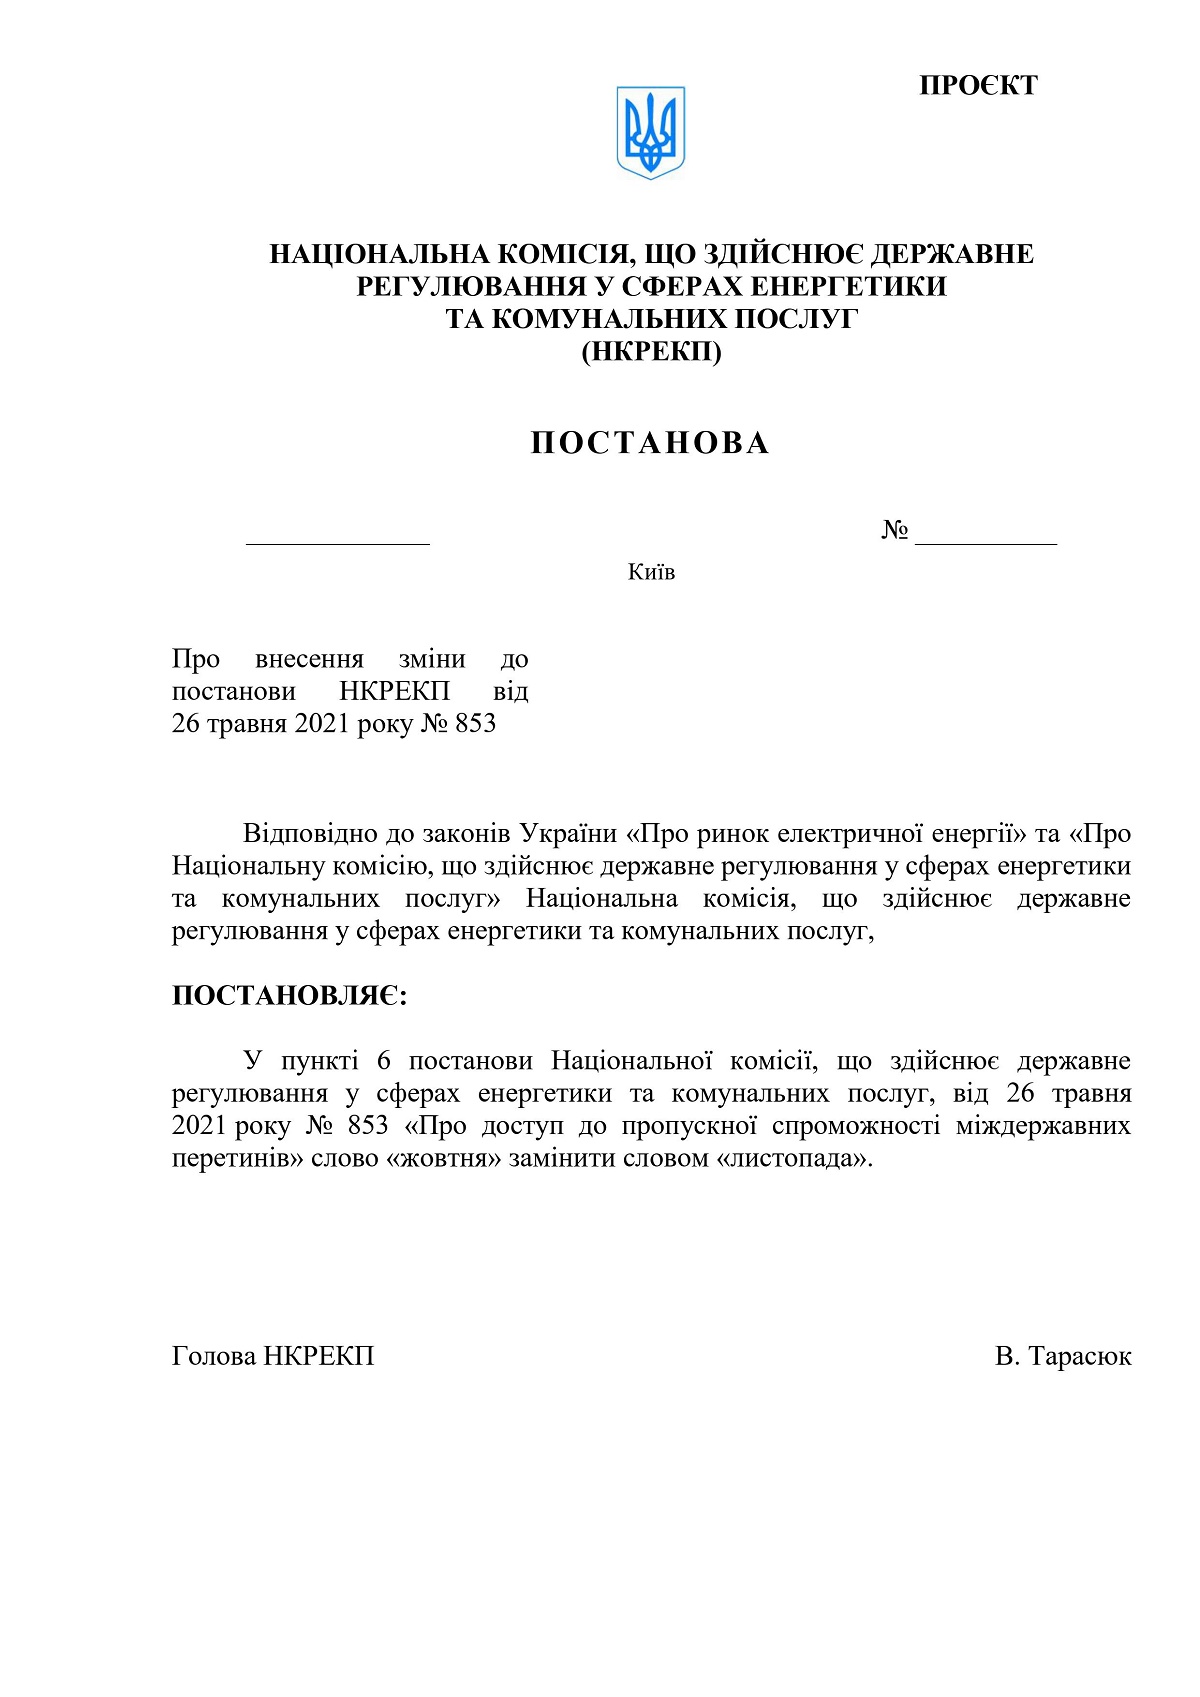 Украина продлила запрет импорта э/э из России и Беларуси - 2 - изображение